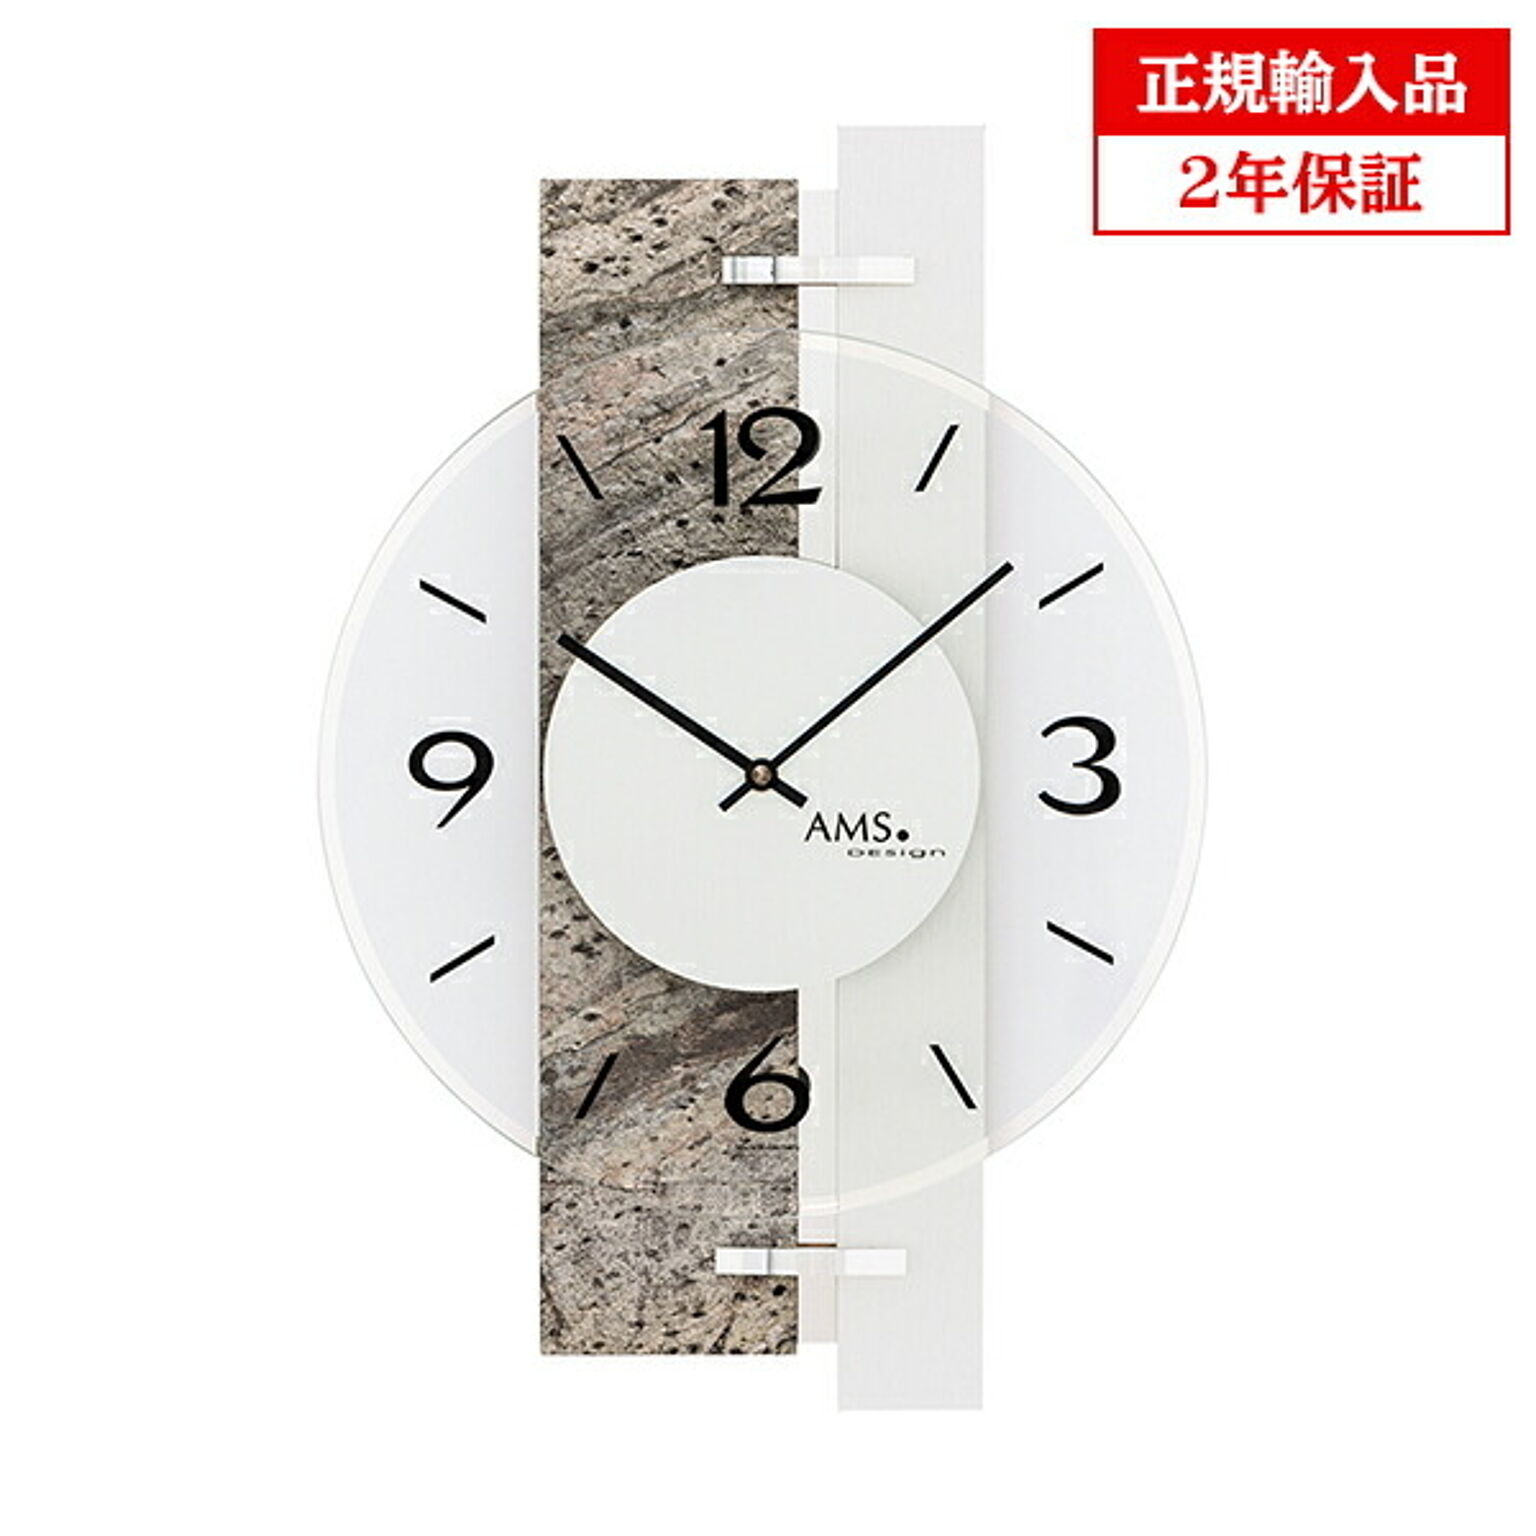 アームス社 AMS 9558 クオーツ 掛け時計 (掛時計) ストーン ドイツ製 【正規輸入品】【メーカー保証2年】